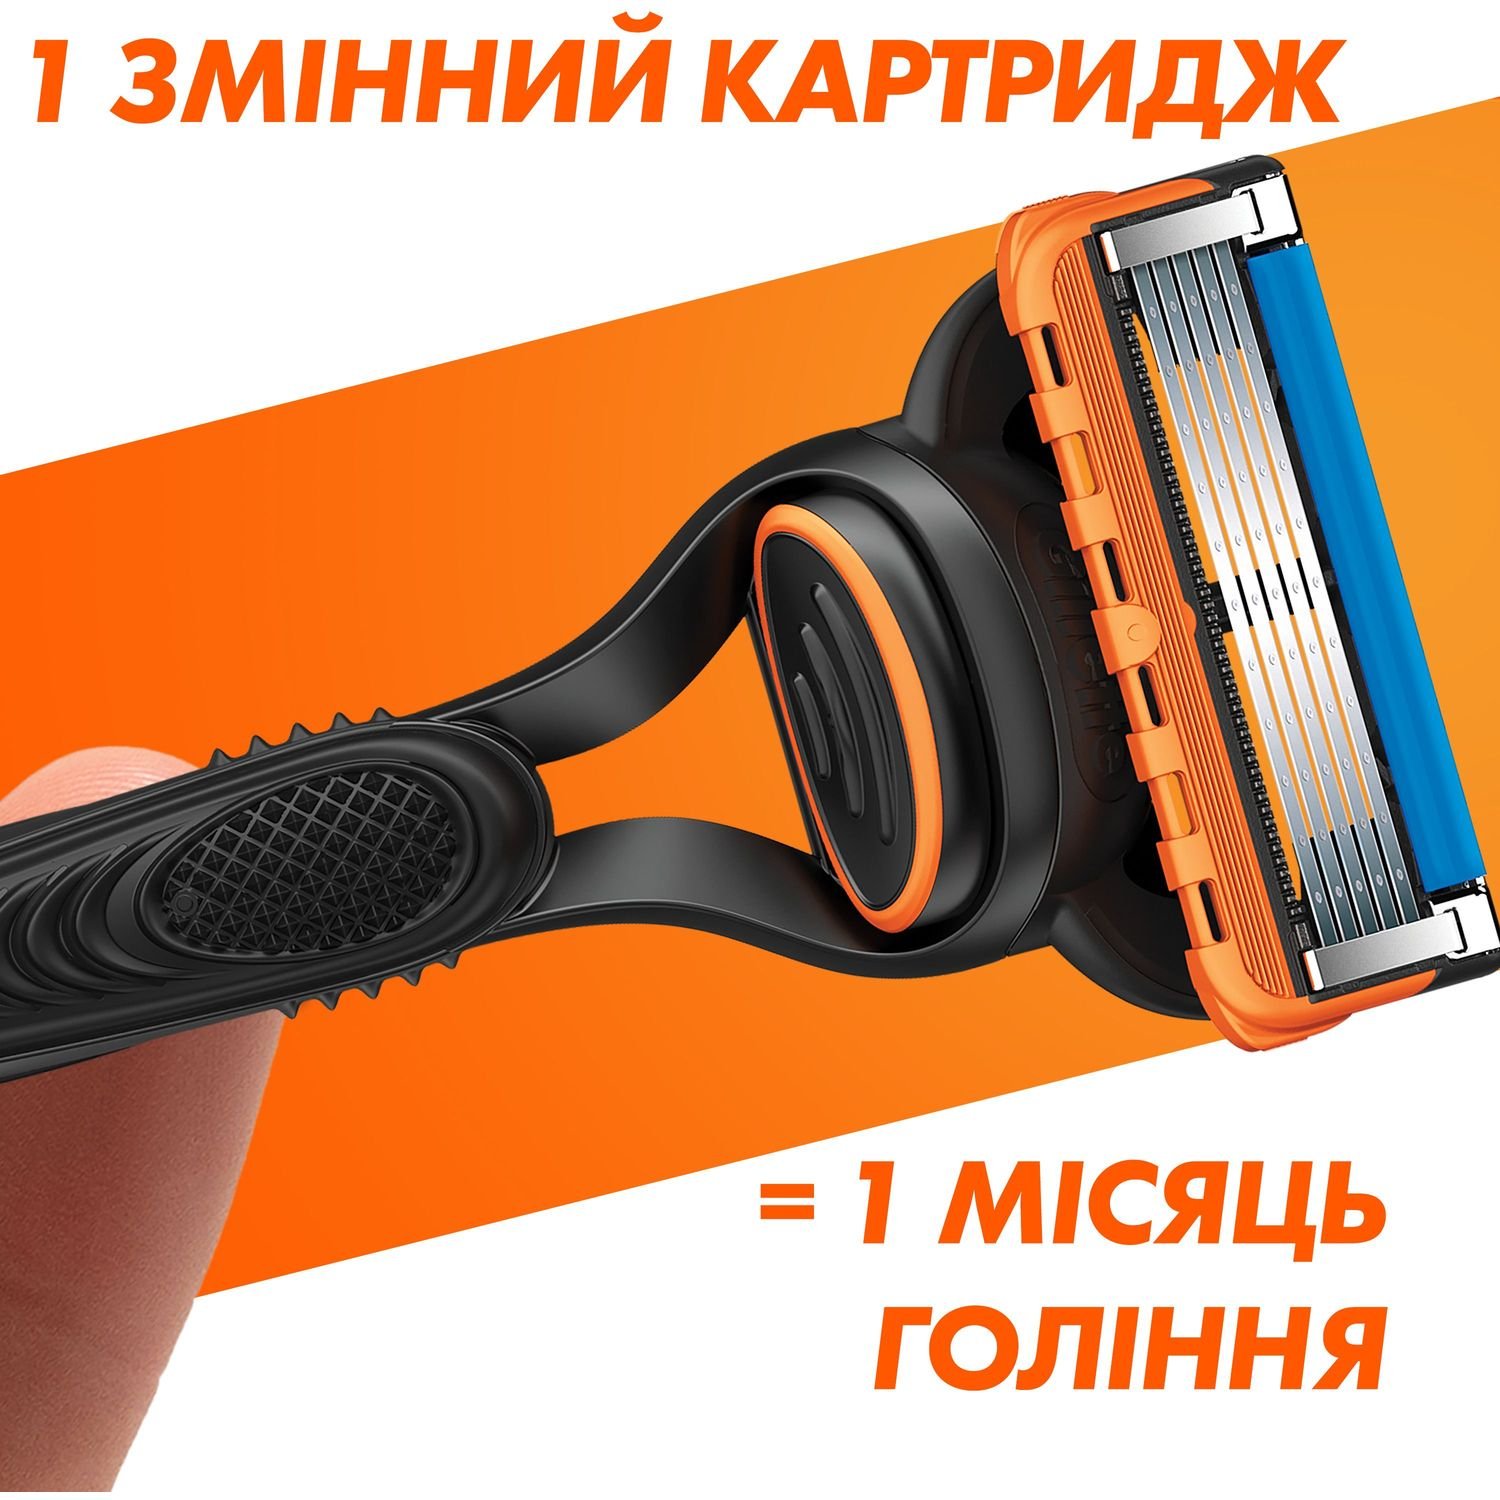 Сменные картриджи для бритья мужские Gillette Fusion5 2 шт. - фото 5